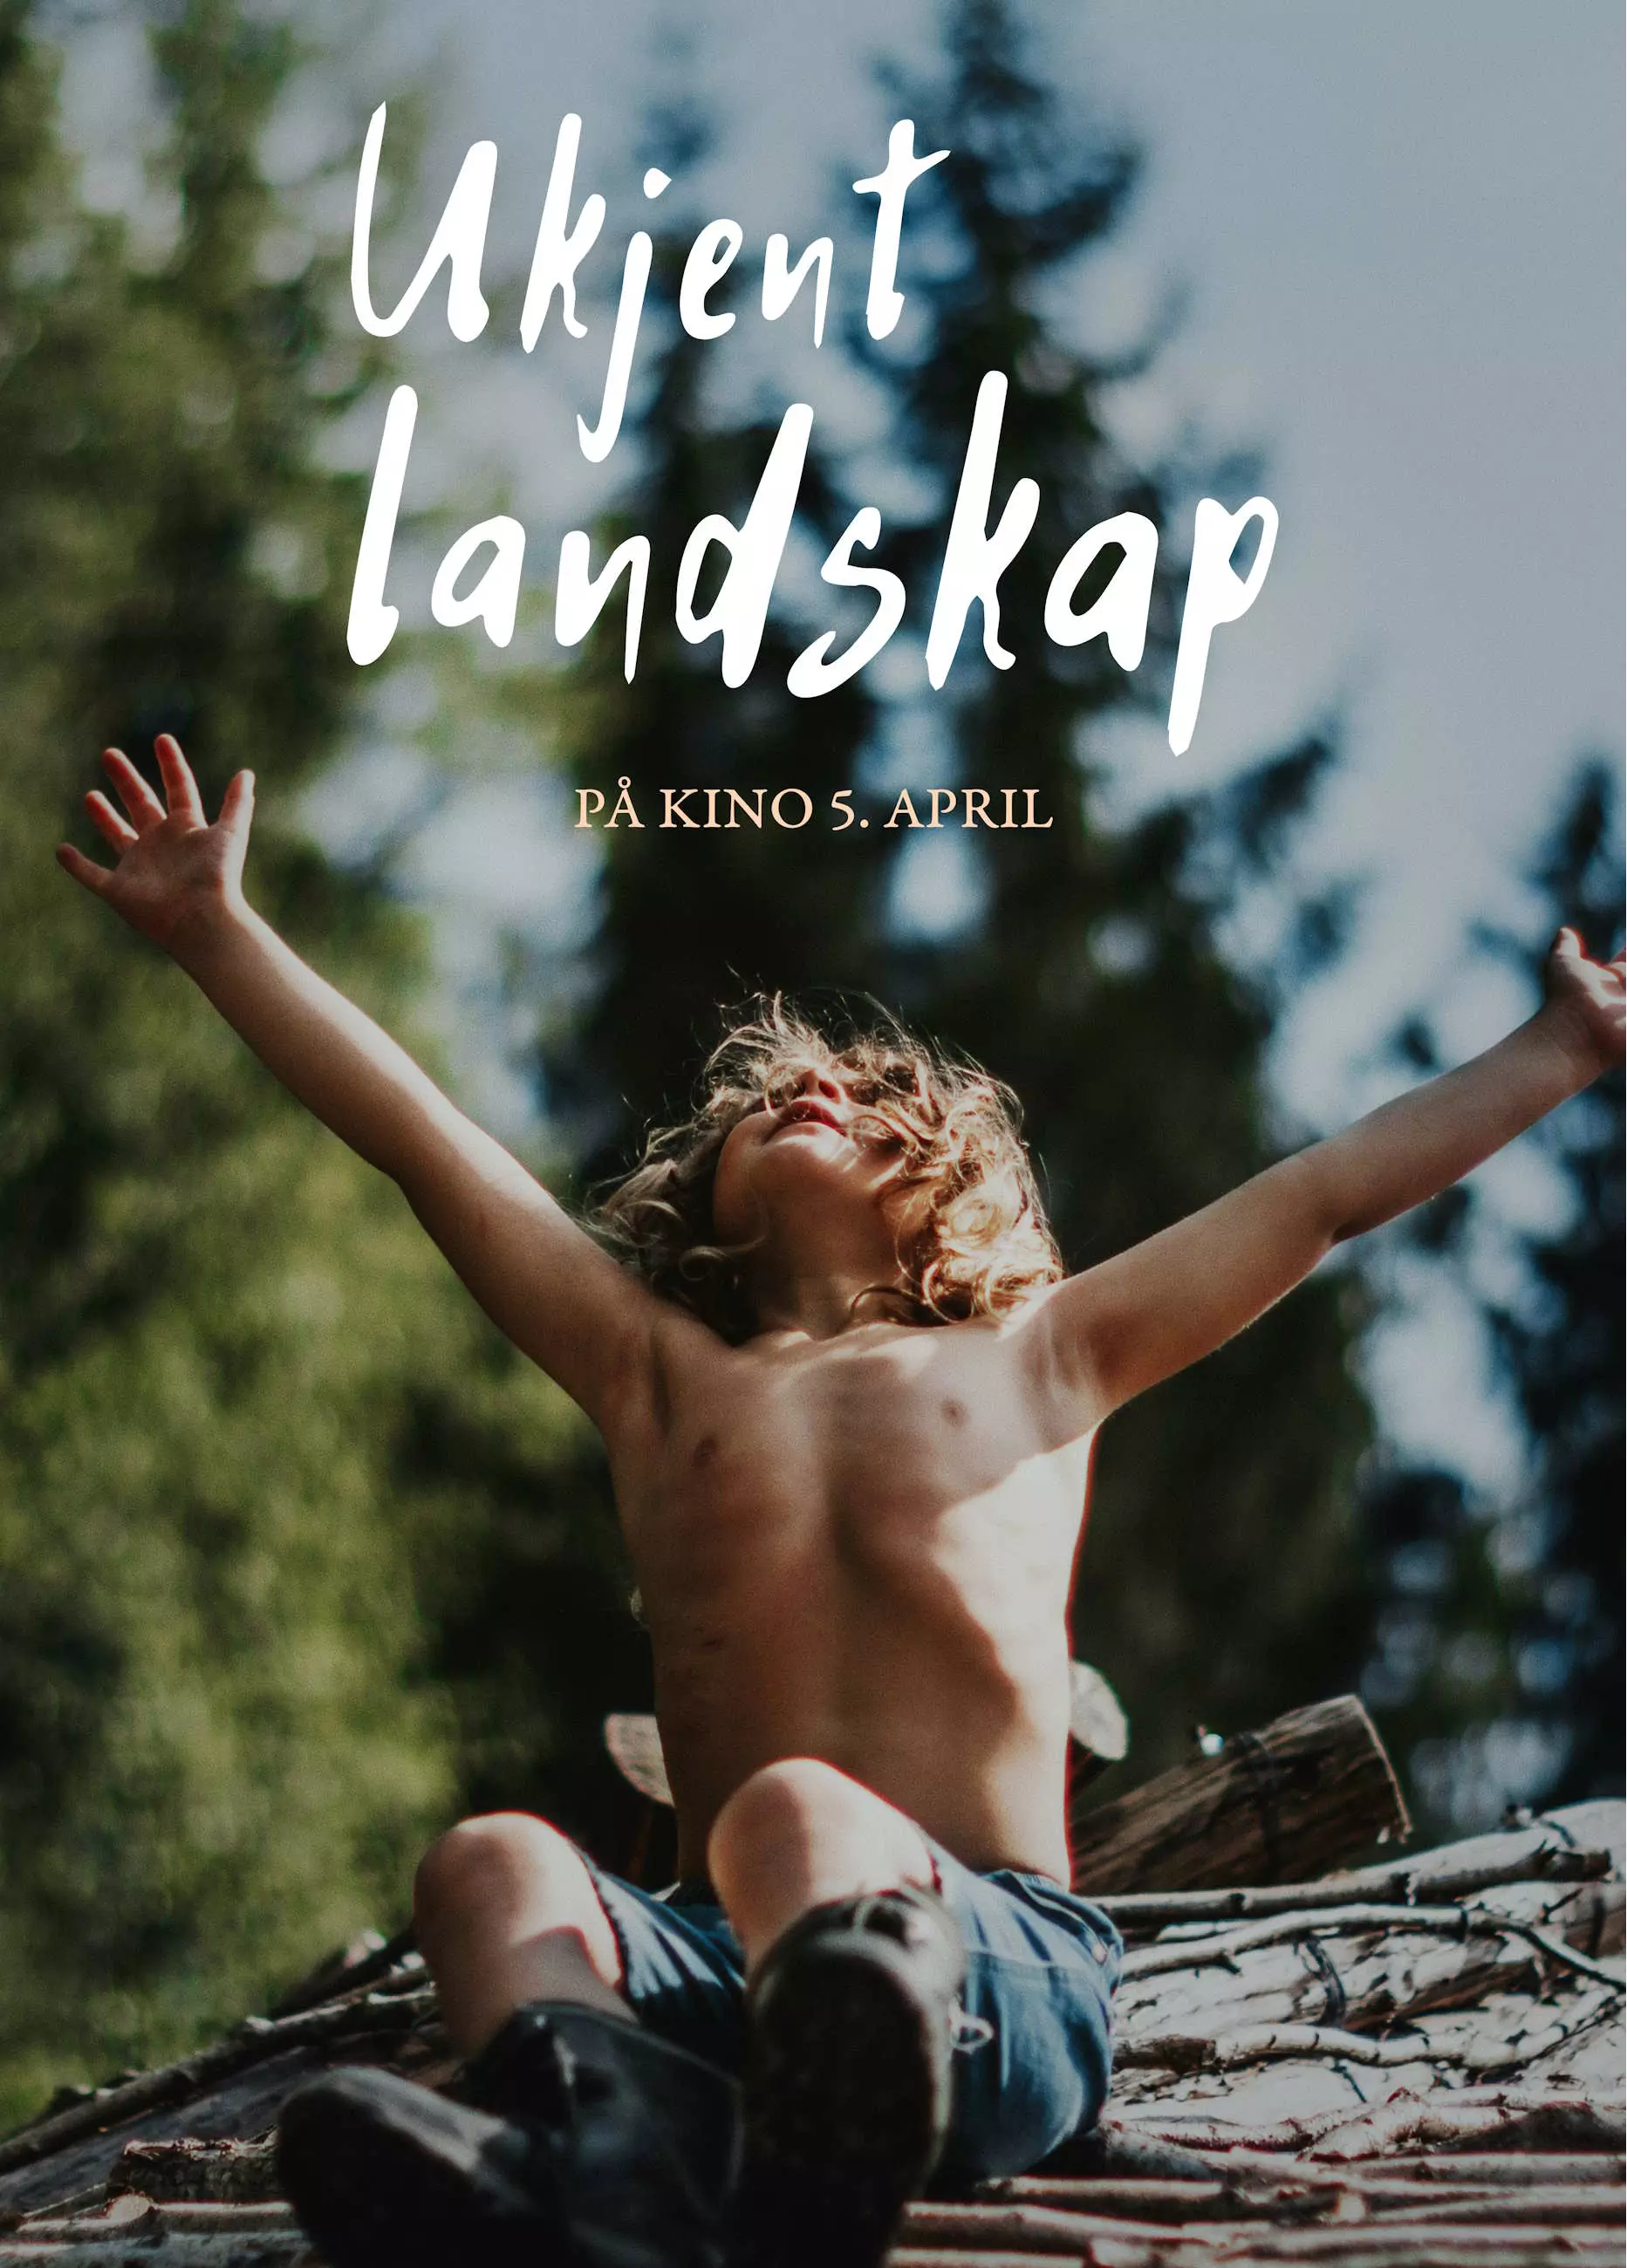 Filmplakat til filmen "Ukjent landskap". En gutt i bar overkropp strekker armene opp mot himmelen ute i naturen, og gir en følelse av frihet og eventyr.